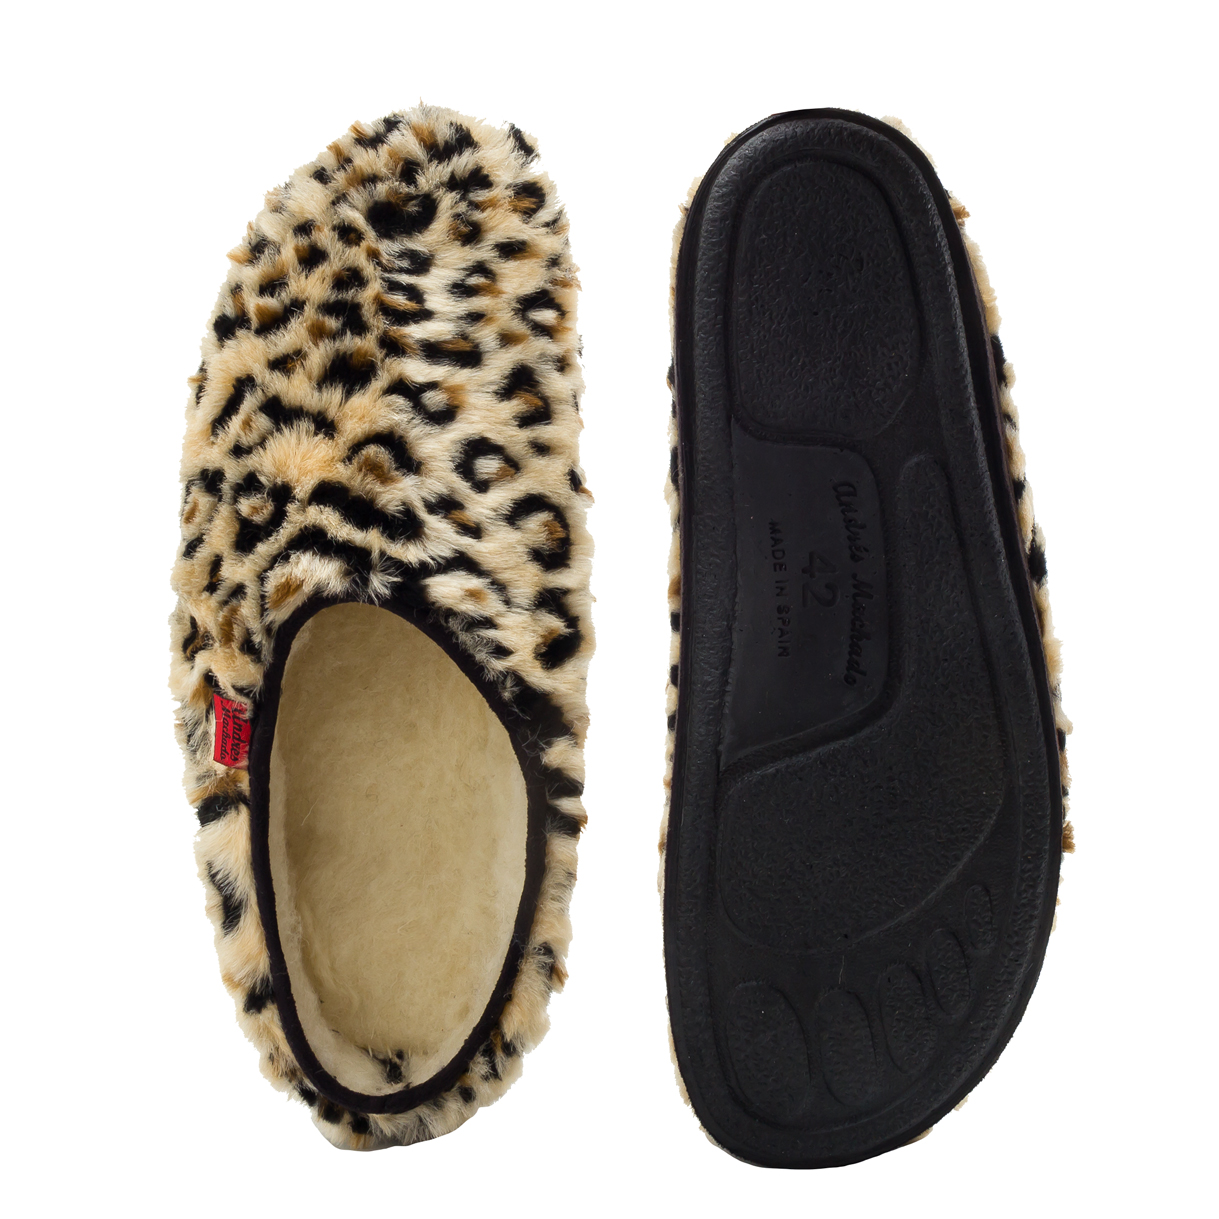 Zapatillas de Pelo Largo con estampado de Leopardo. 